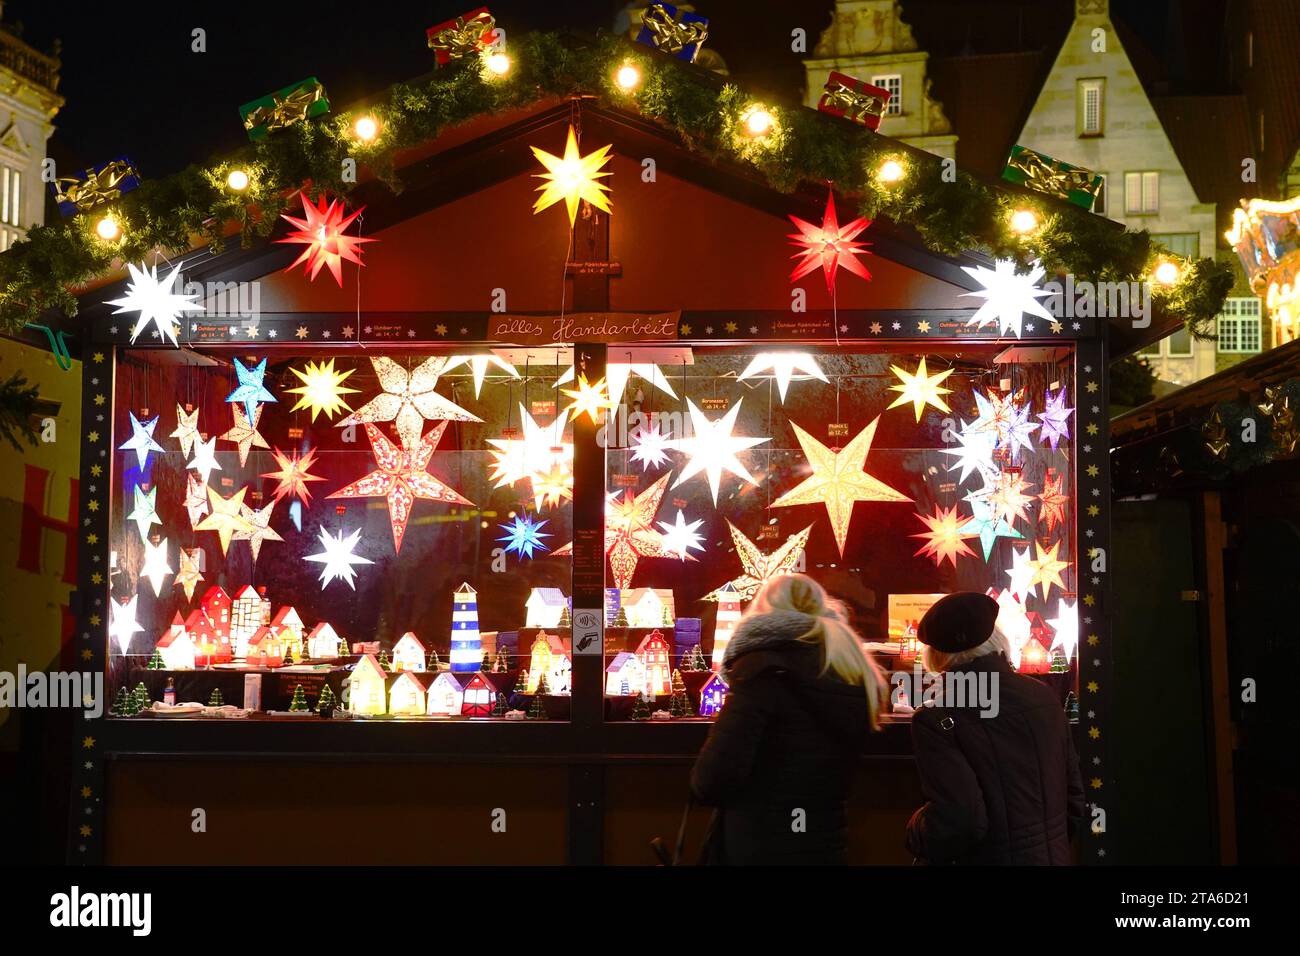 Der Weihnachtsmarkt auf dem Bremer Marktplatz. *** Der Weihnachtsmarkt auf dem Bremens Market Square Credit: Imago/Alamy Live News Stockfoto